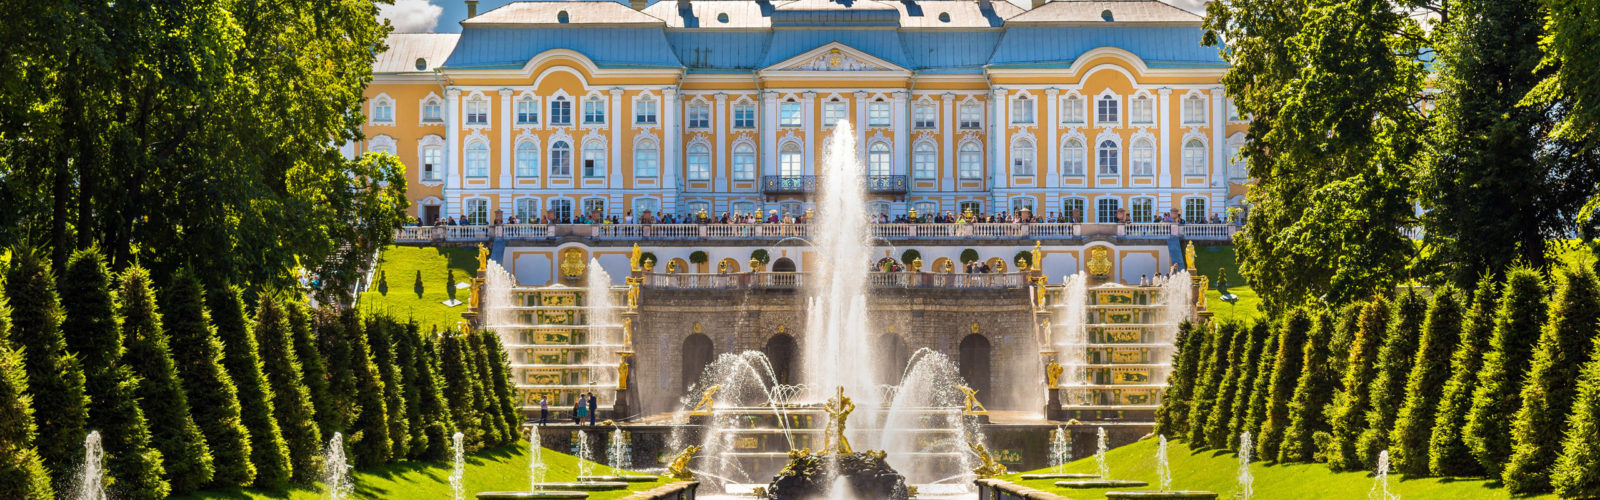 peterhof-palace-st-petersburg-russia